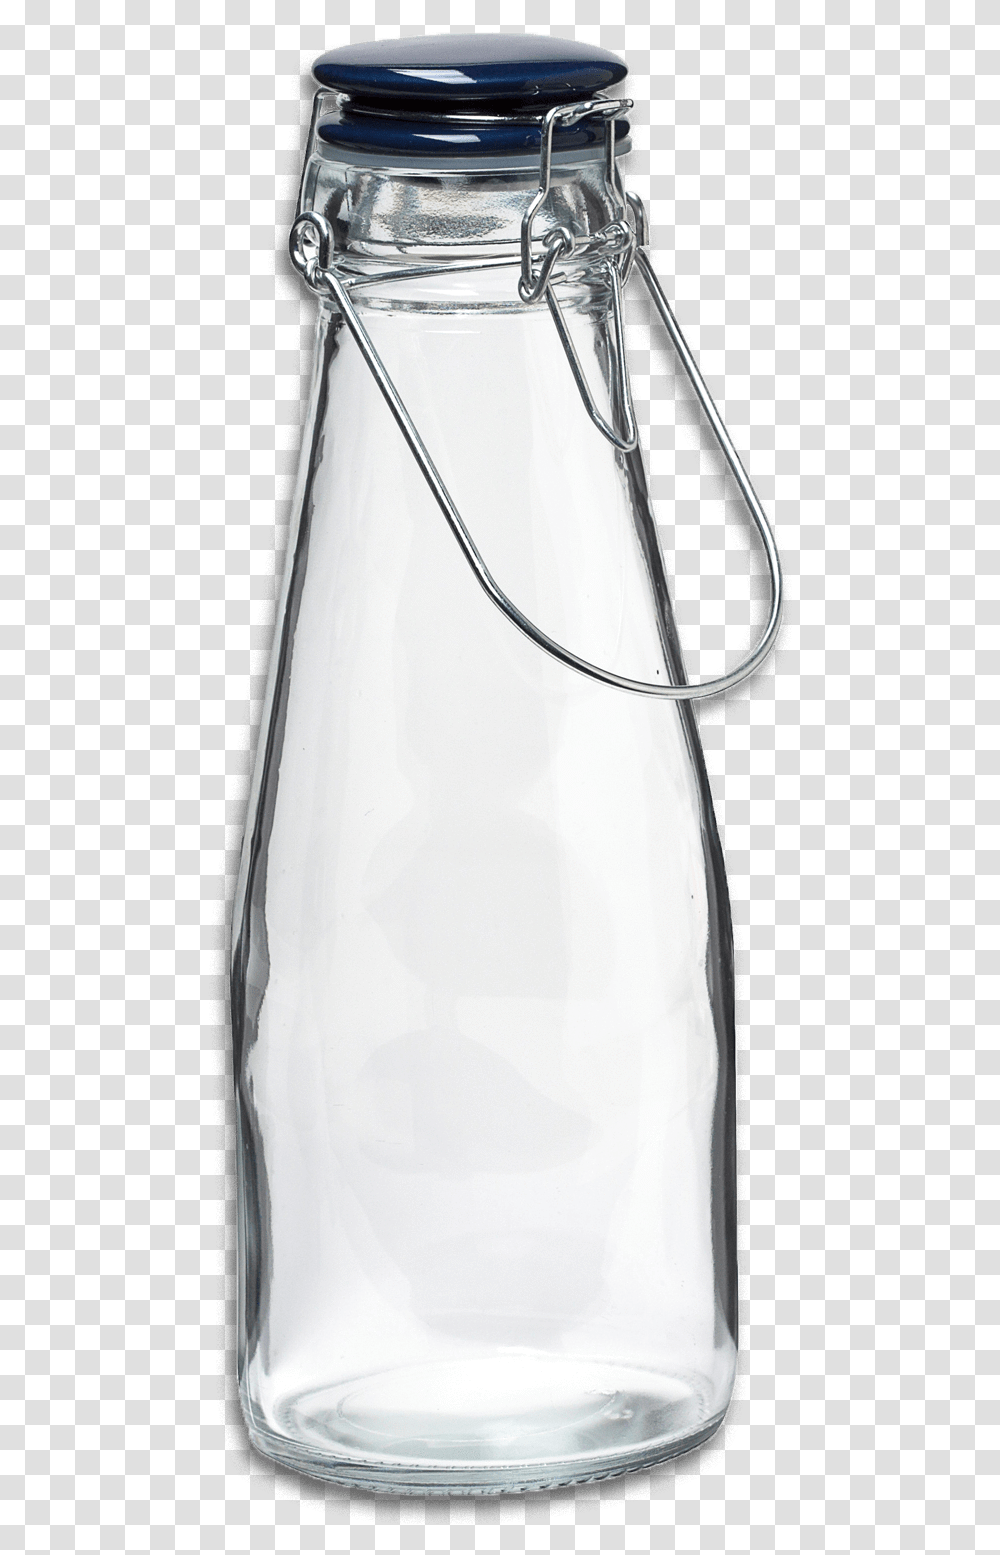 Clear 2 Glass Bottles, Jug, Milk, Beverage, Drink Transparent Png